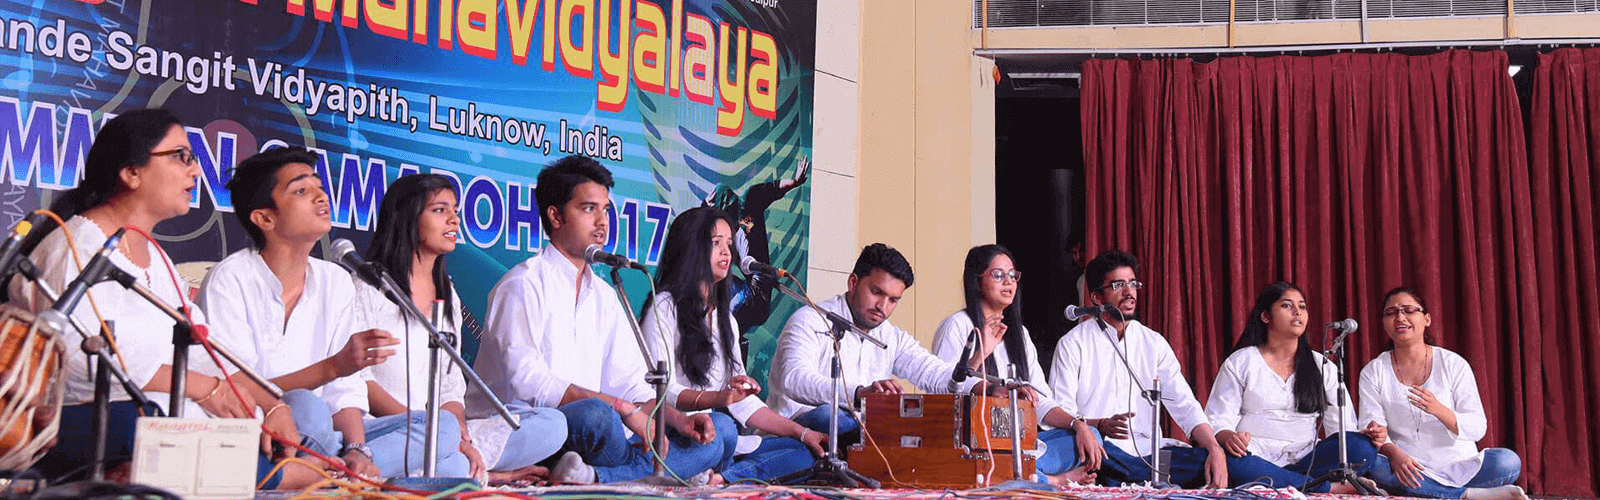 : jaipur sangeet mahavidyalaya music academy jaipur